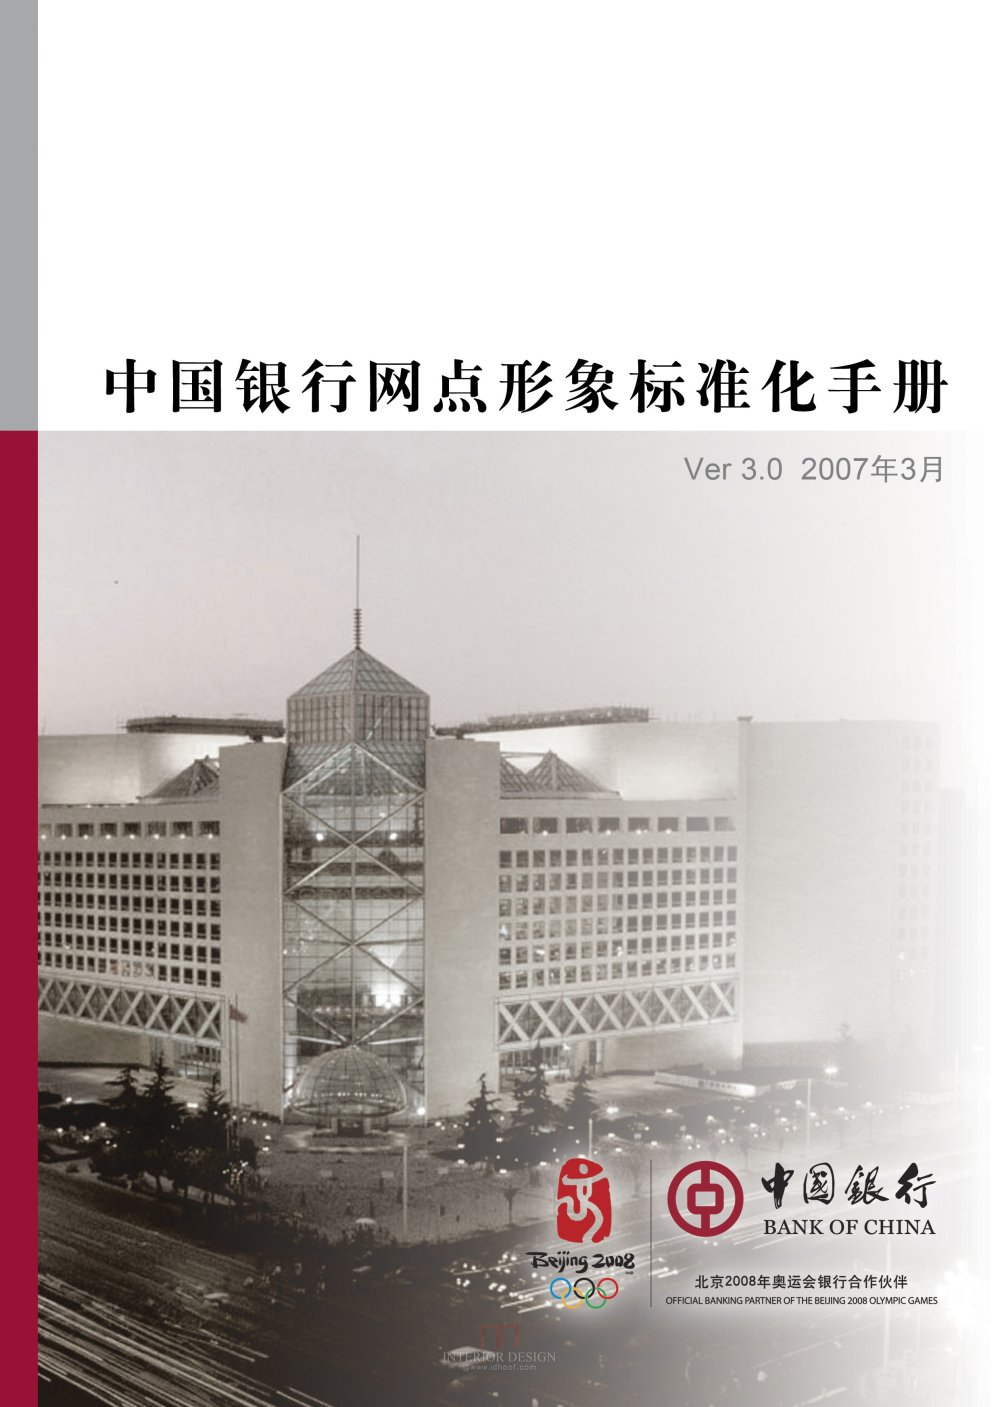 学会银行设计 中国银行形象标准化手册V3.0版_中国银行形象标准化手册V3.0版_页面_001.jpg